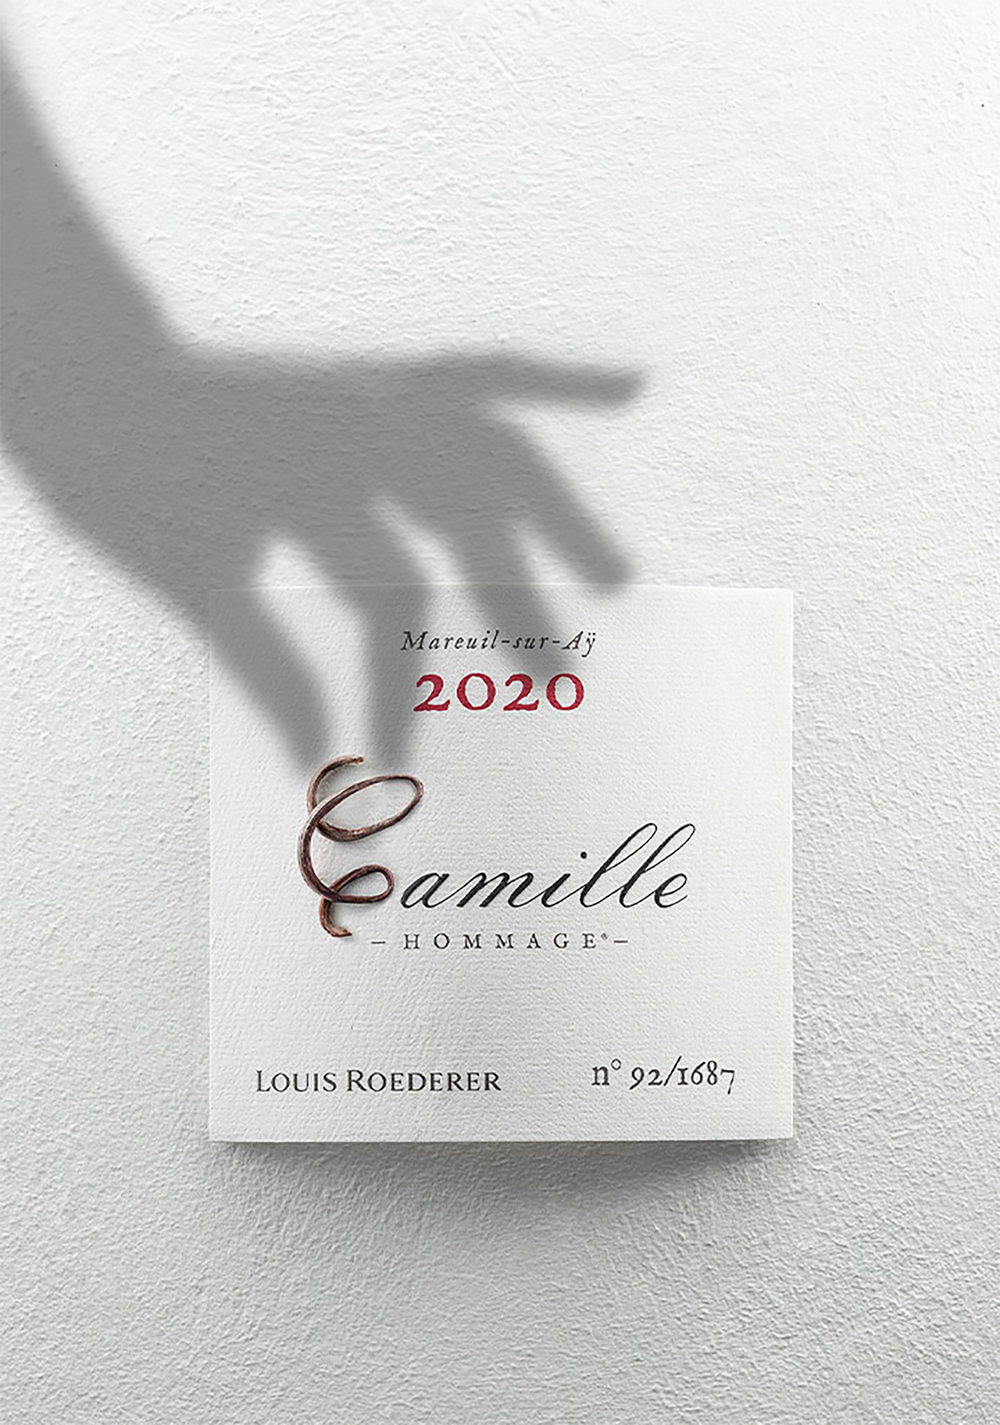 Louis Roederer Hommage à Camille Coteaux Champenois Rouge 2020